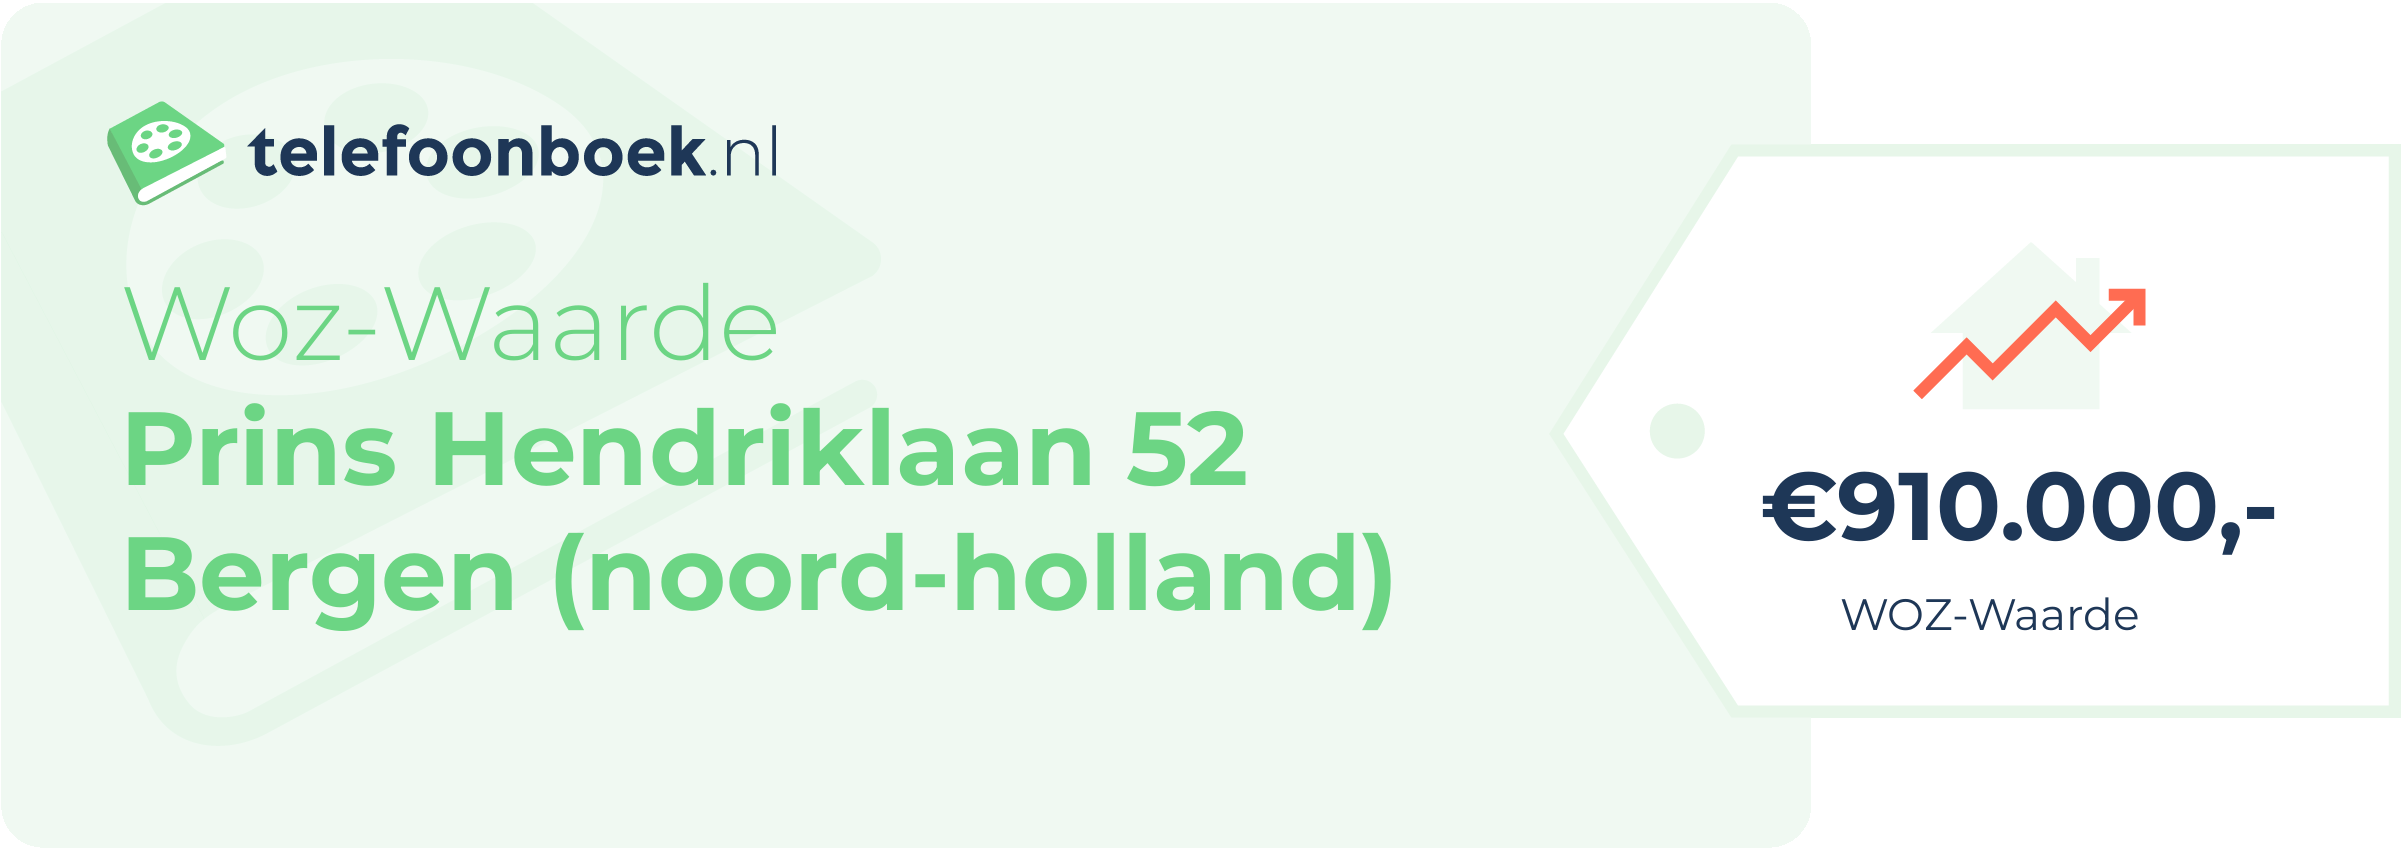 WOZ-waarde Prins Hendriklaan 52 Bergen (Noord-Holland)